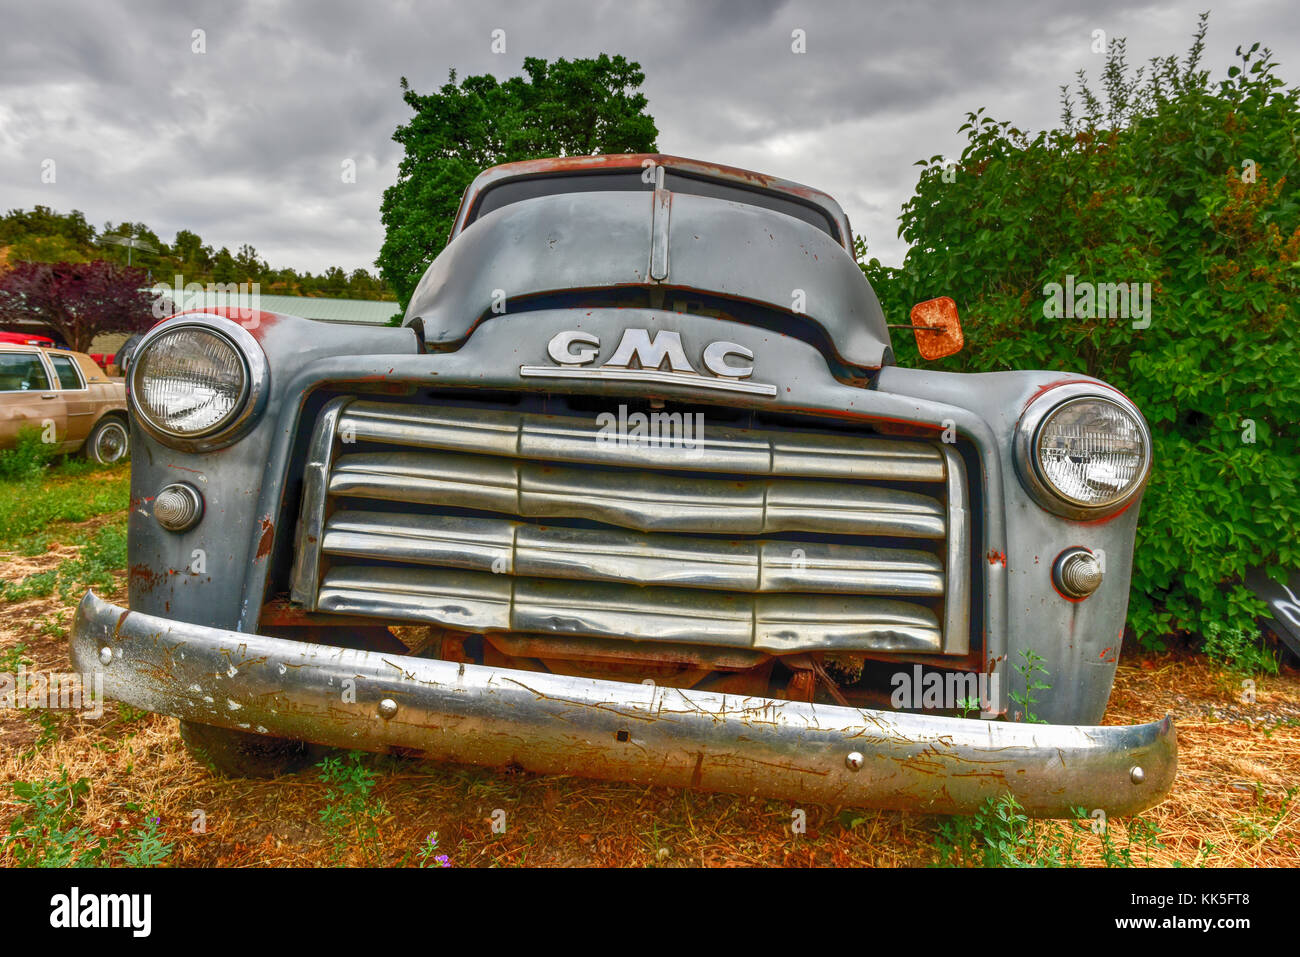 Rost alten gmc Auto in einer Wüste Junk Yard. Stockfoto